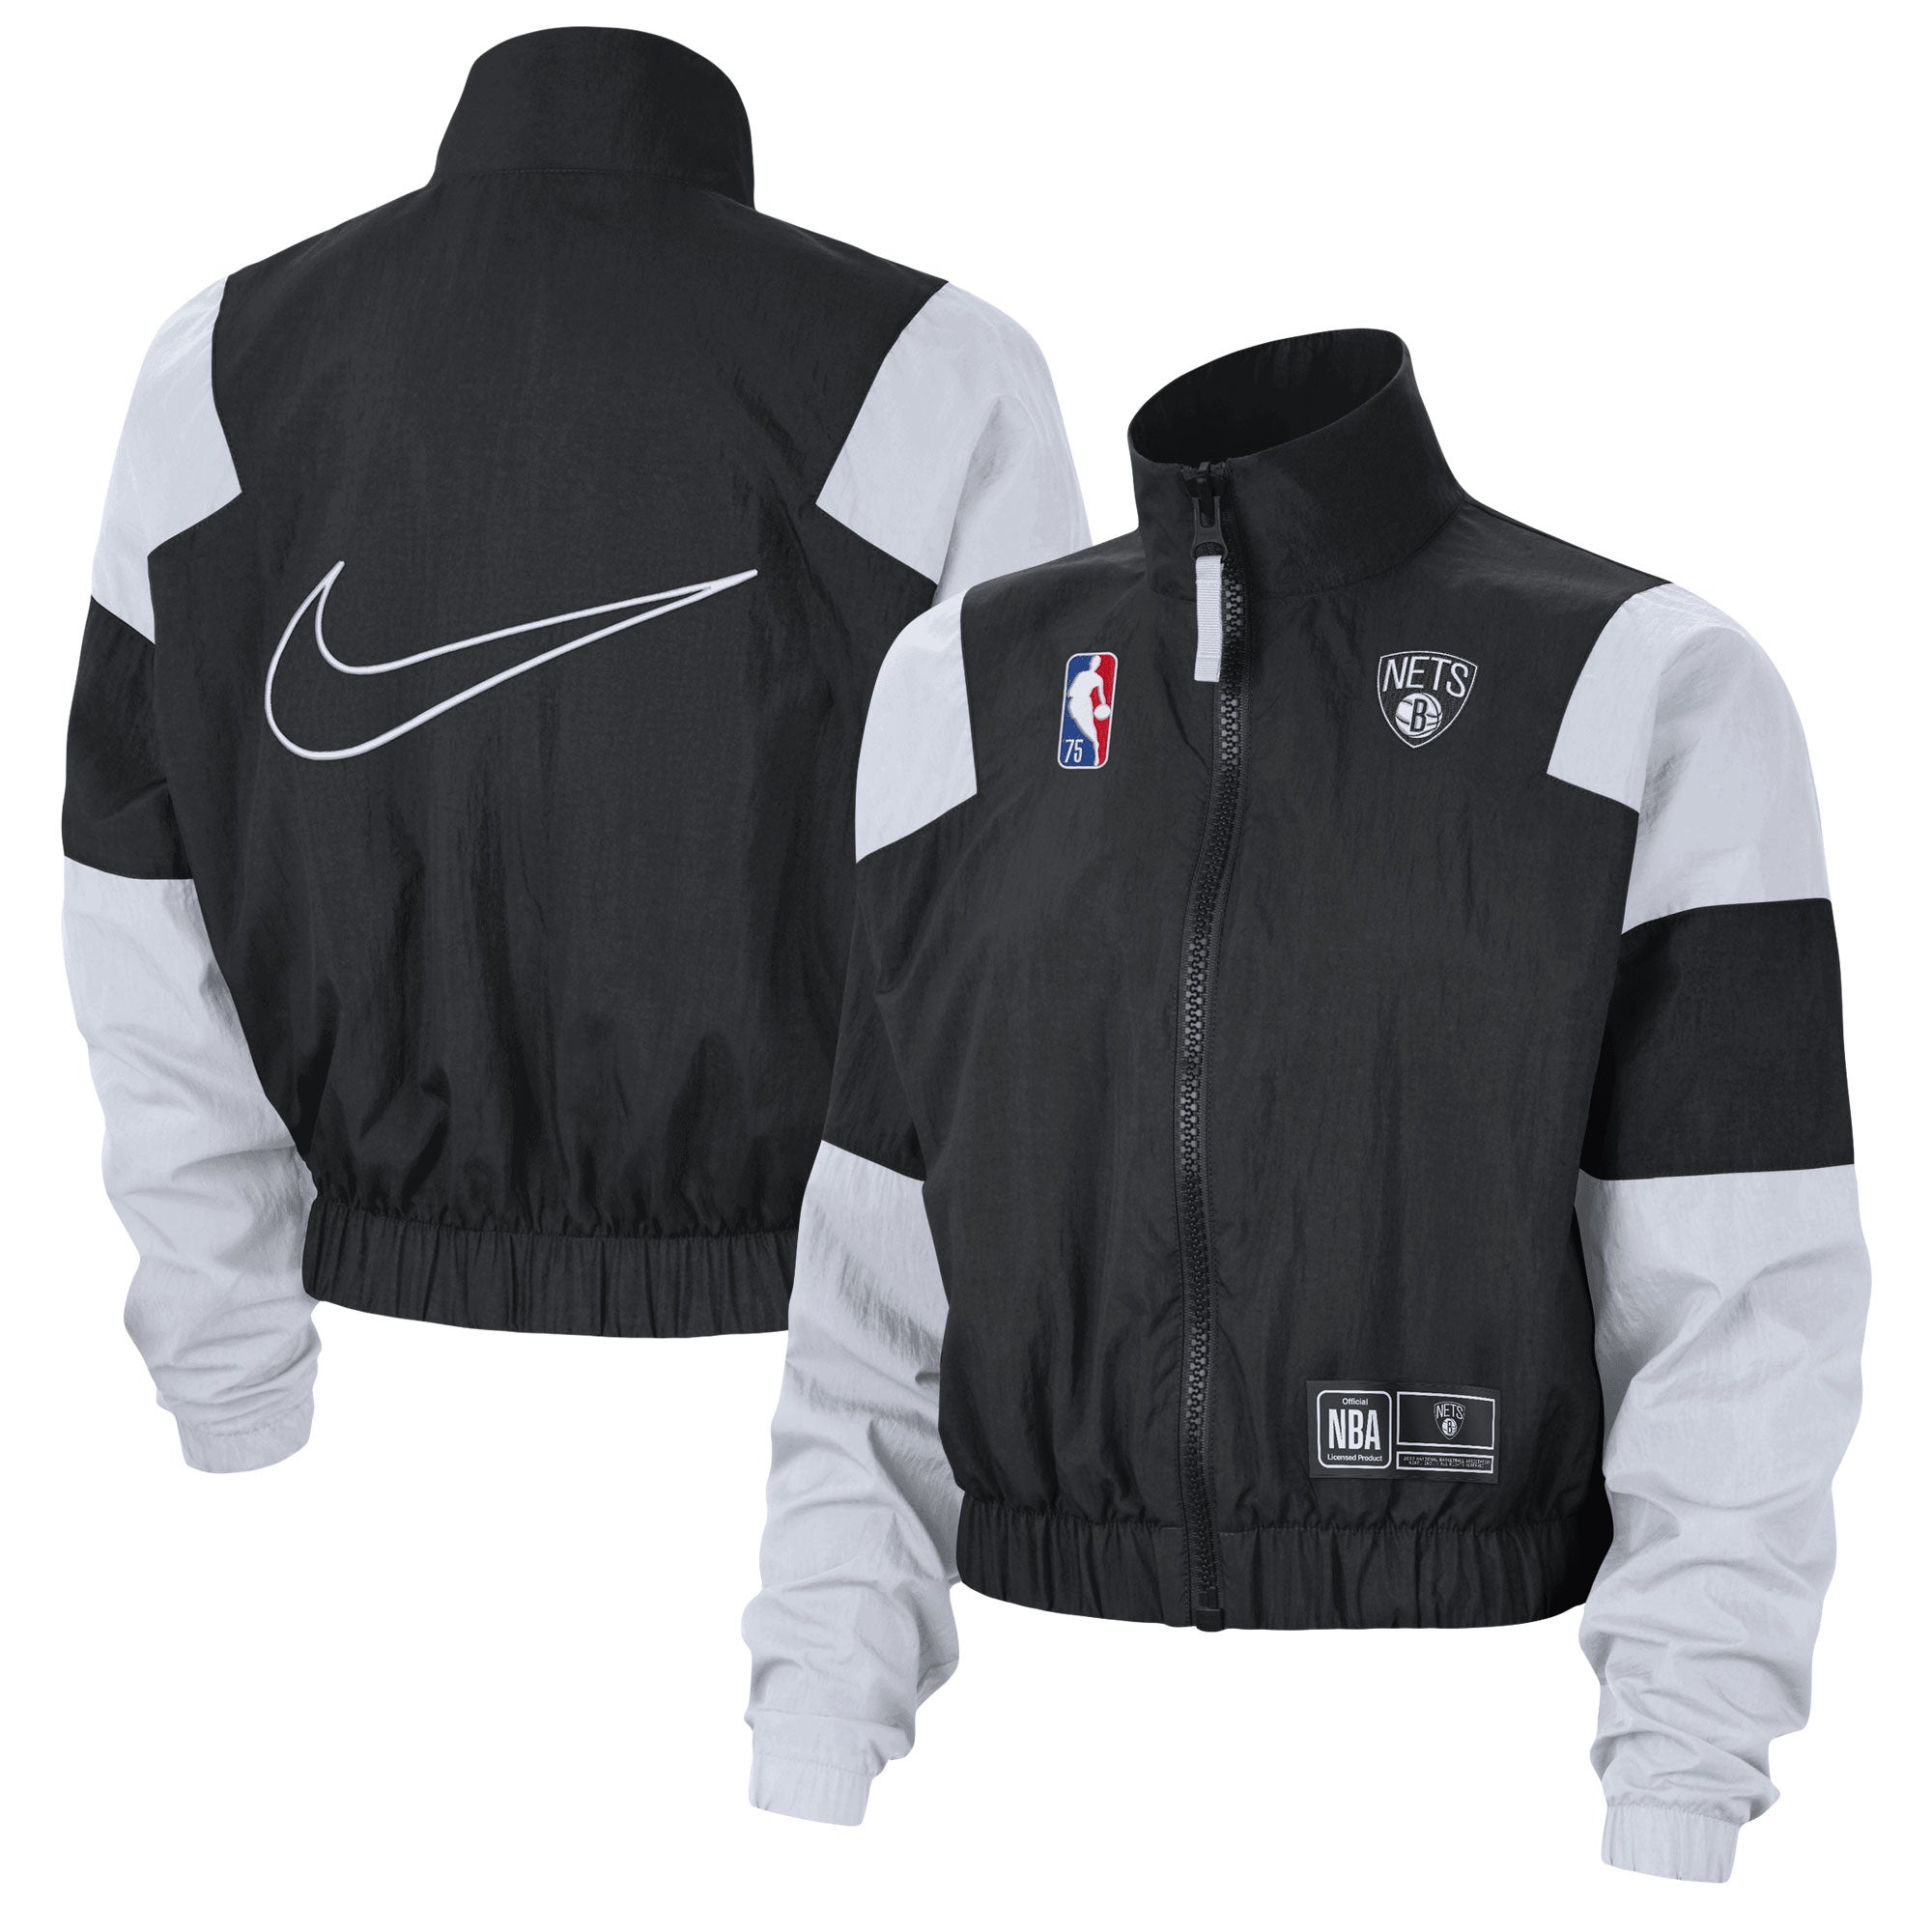 Nike Nets Courtside Full-Zip Jacket - Women's